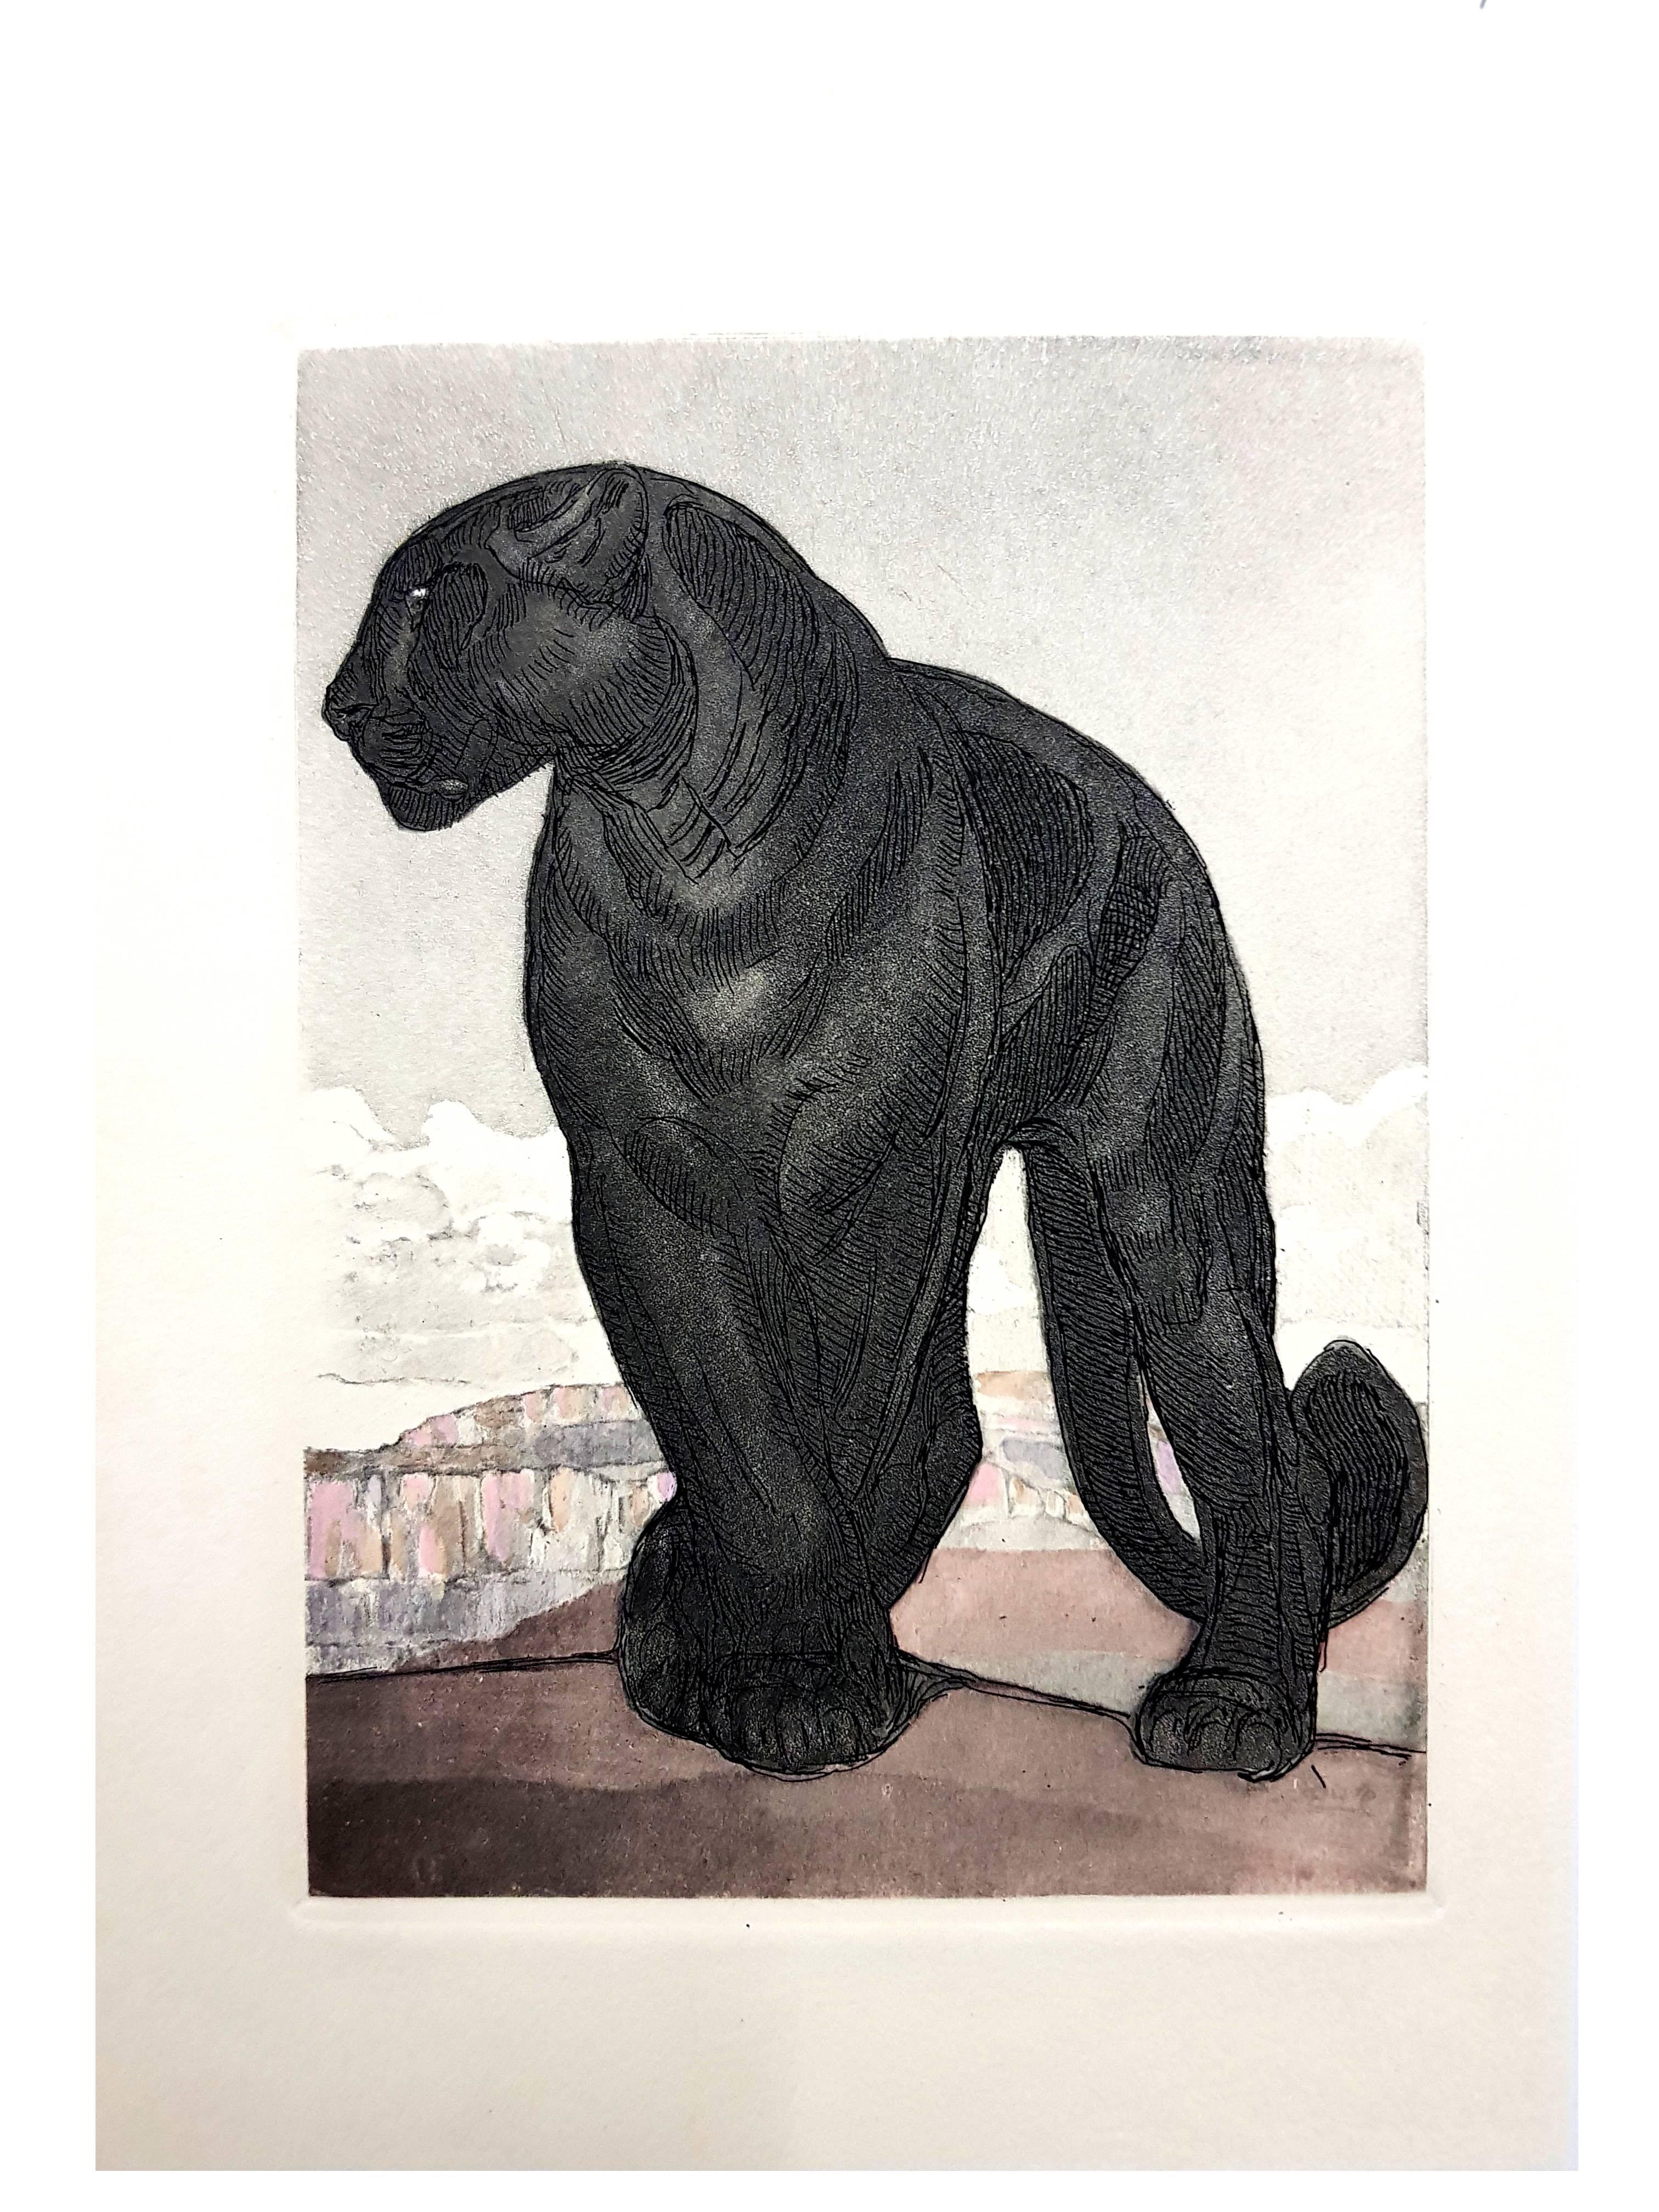 Paul Jouve - Black Leopard - Original Engraving - Modern Print by Pierre-Paul Jouve